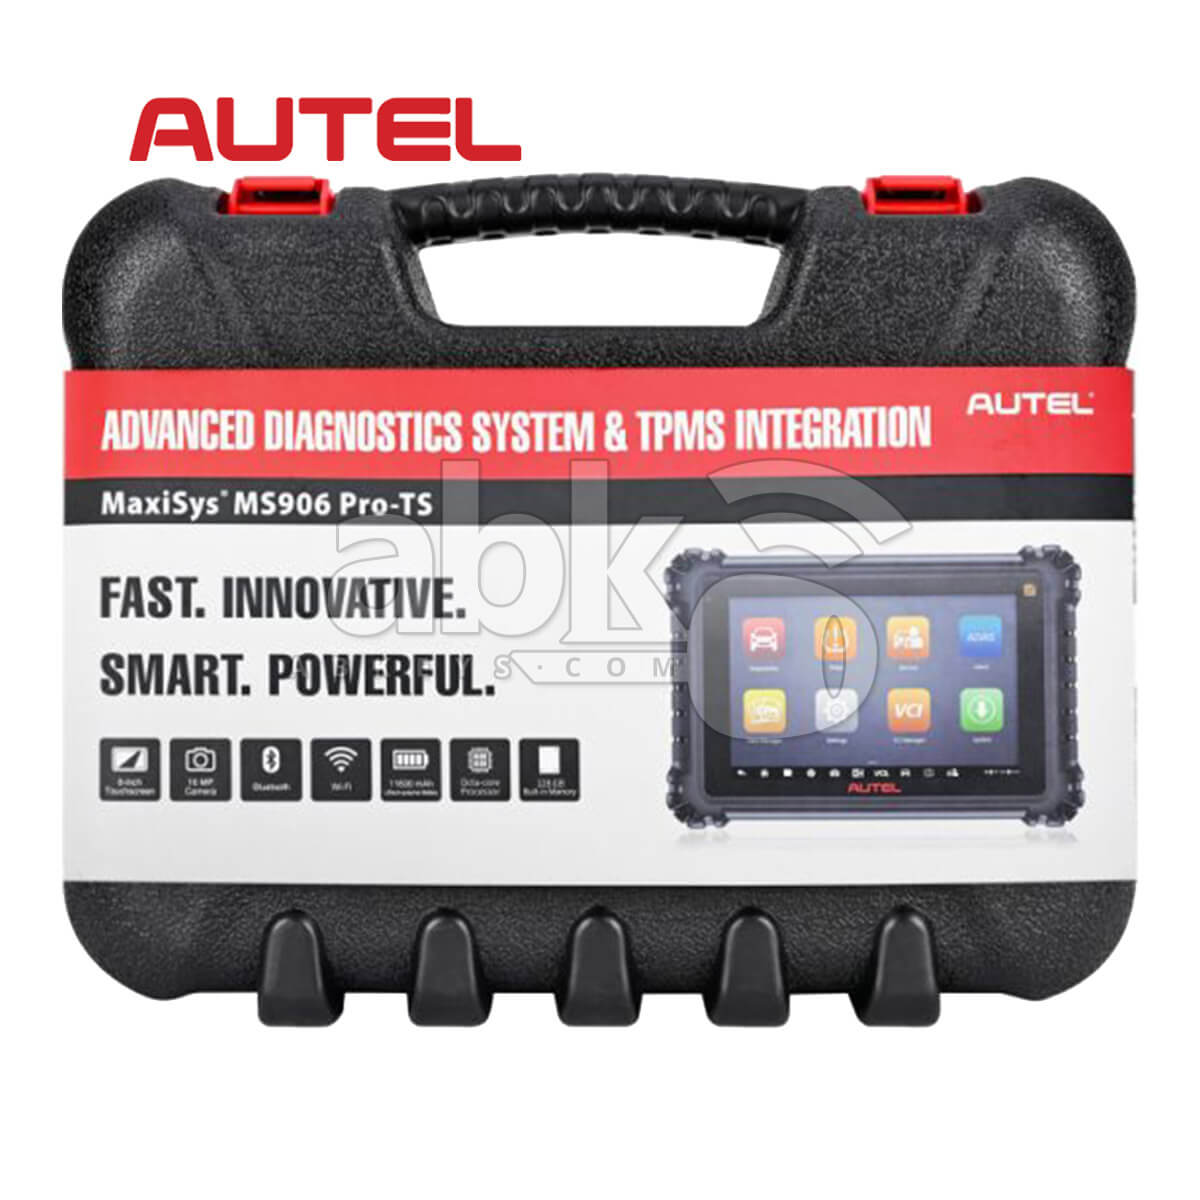 Autel Quick Start Guide – MS 906Pro Bi-Directional Diagnostic Tablet 